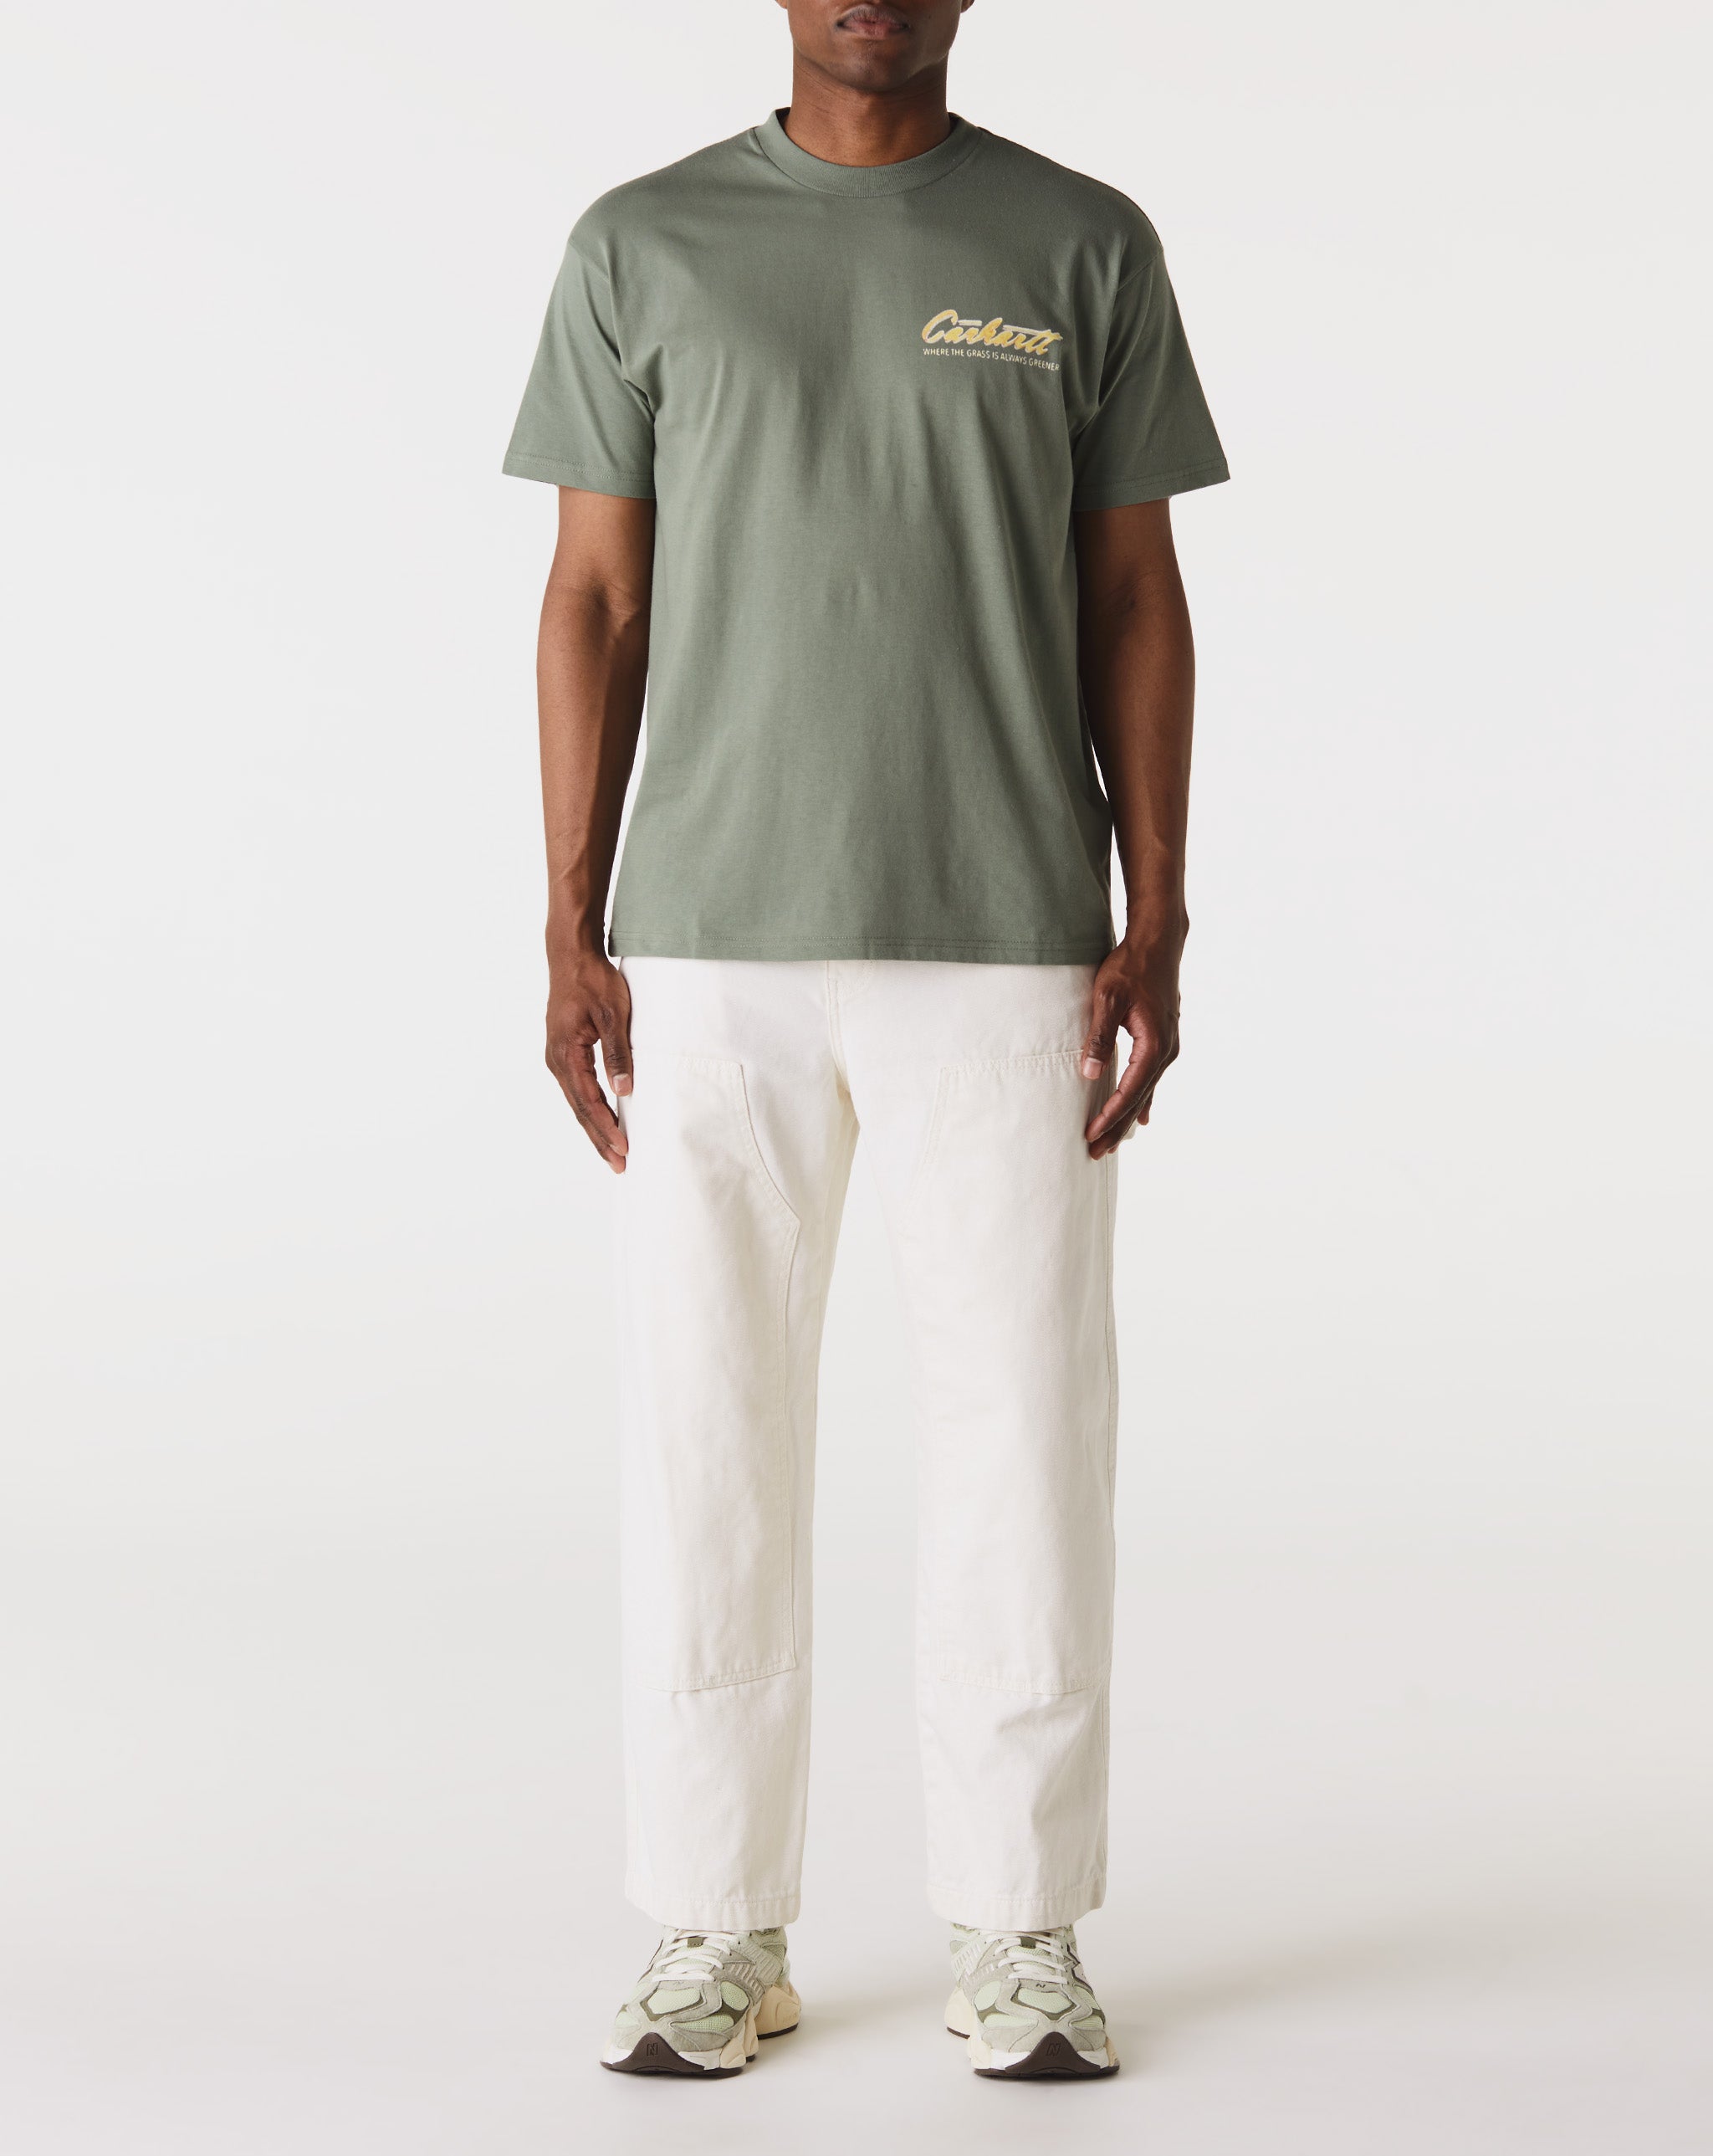 Carhartt WIP Green Grass T-Shirt  - Cheap Urlfreeze Jordan outlet